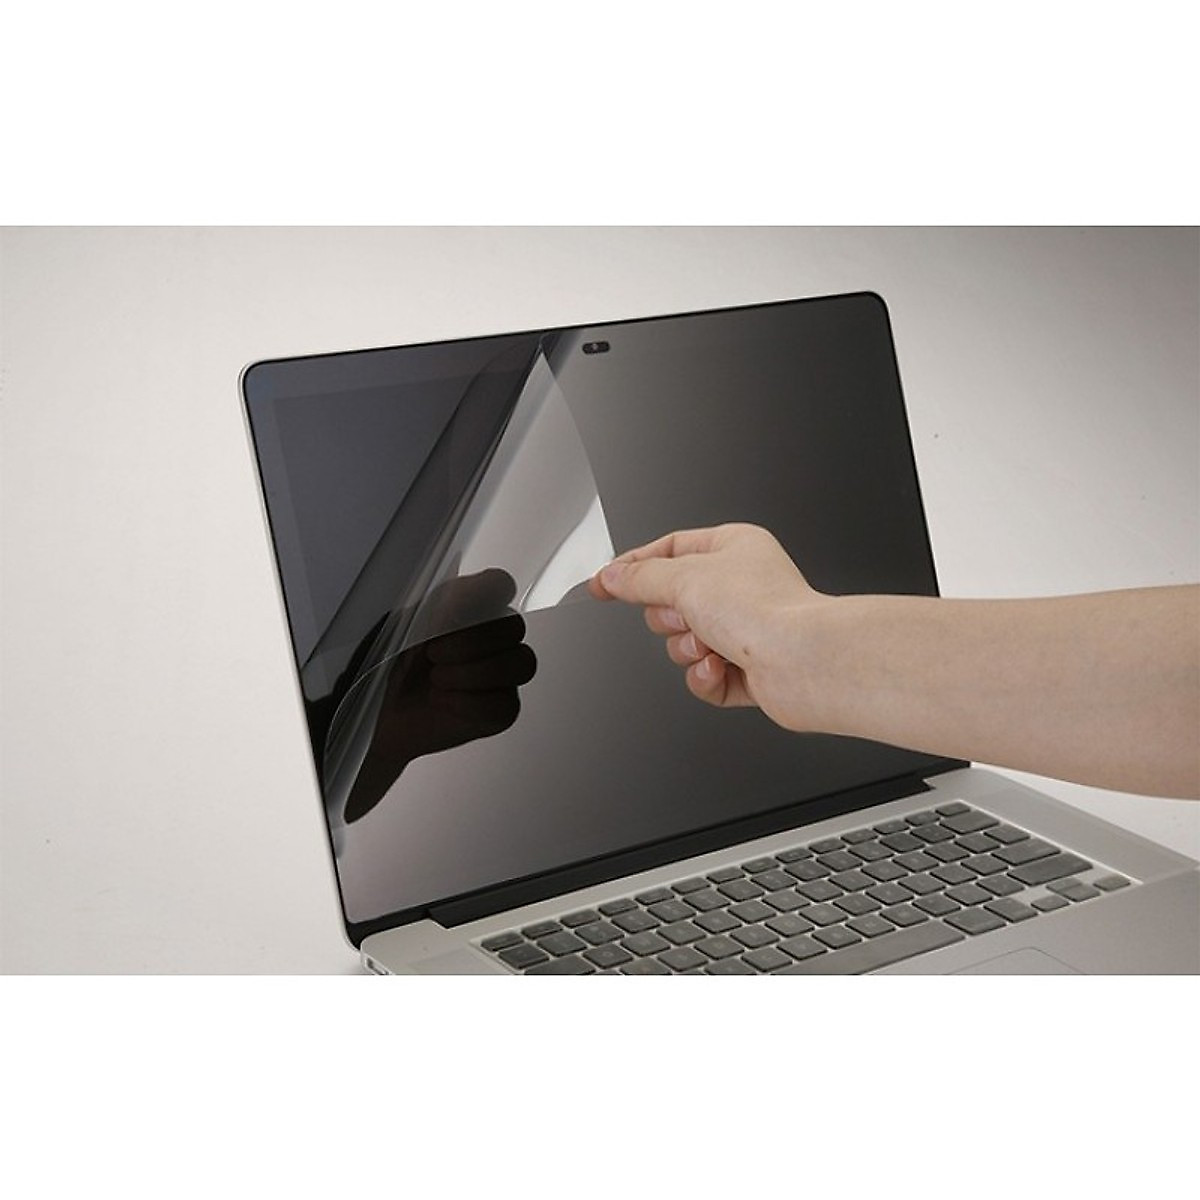 Miếng dán 3M chống xước màn hình JRC cho Macbook AirPro 131516inch